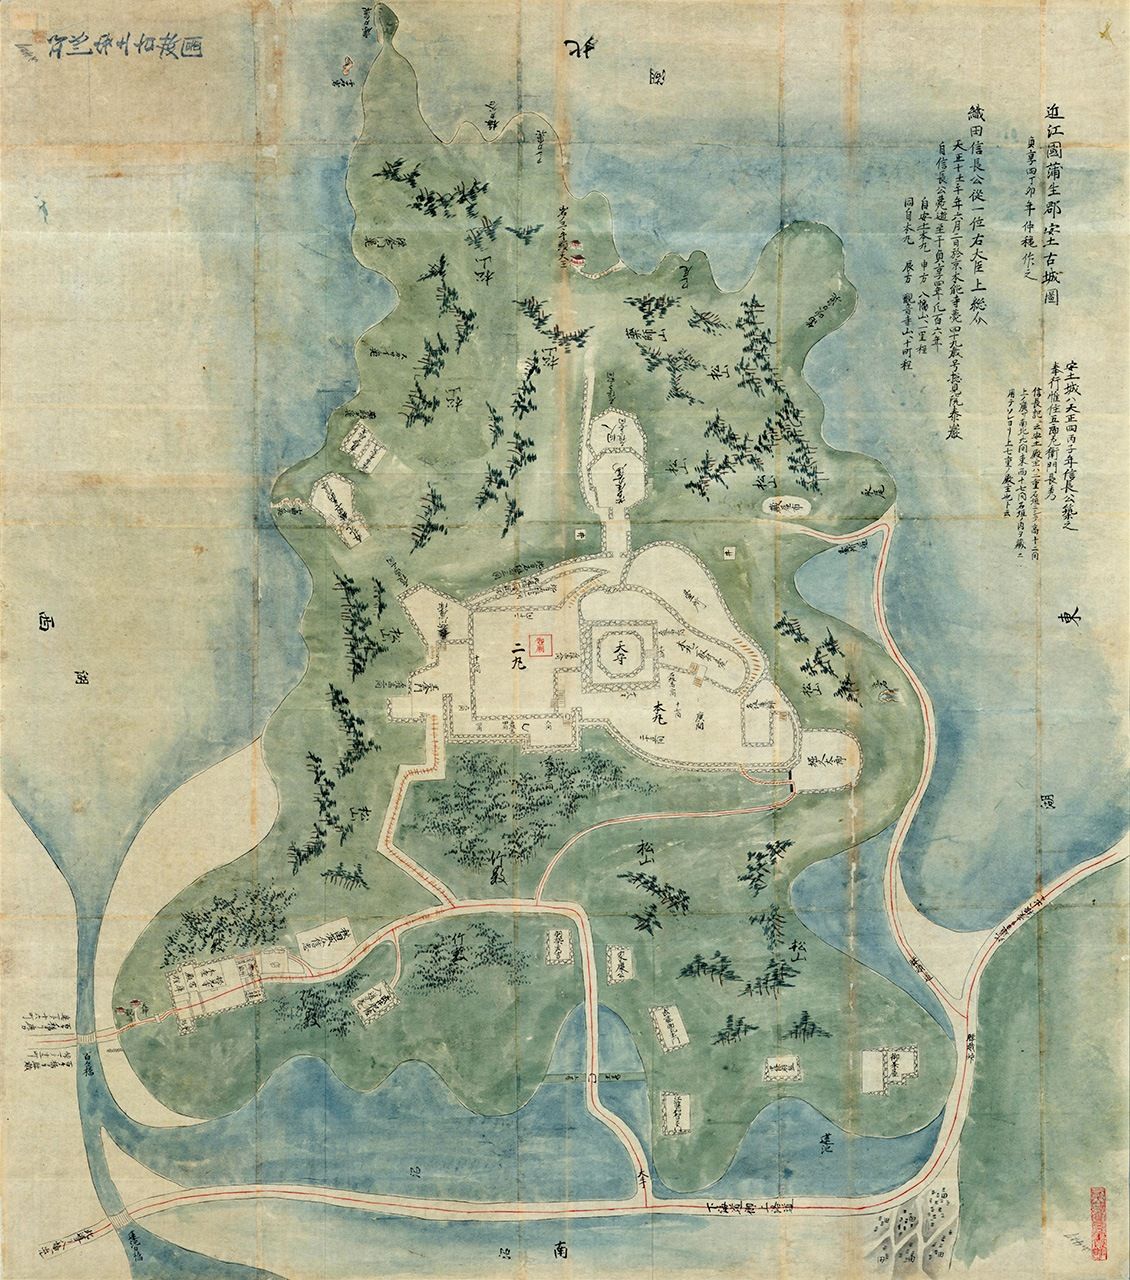 Nihon Kojō Ezu Gōshū Azuchi Kojōzu (Planos de los antiguos castillos de Japón, el plano del antiguo castillo de Goshū Azuchi) es una obra que data de mediados o fines del periodo Edo (1603-1868), pero se cree que es el plano más antiguo que existe de los restos del castillo de Azuchi. (Archivos de la Biblioteca Nacional de la Dieta de Japón)